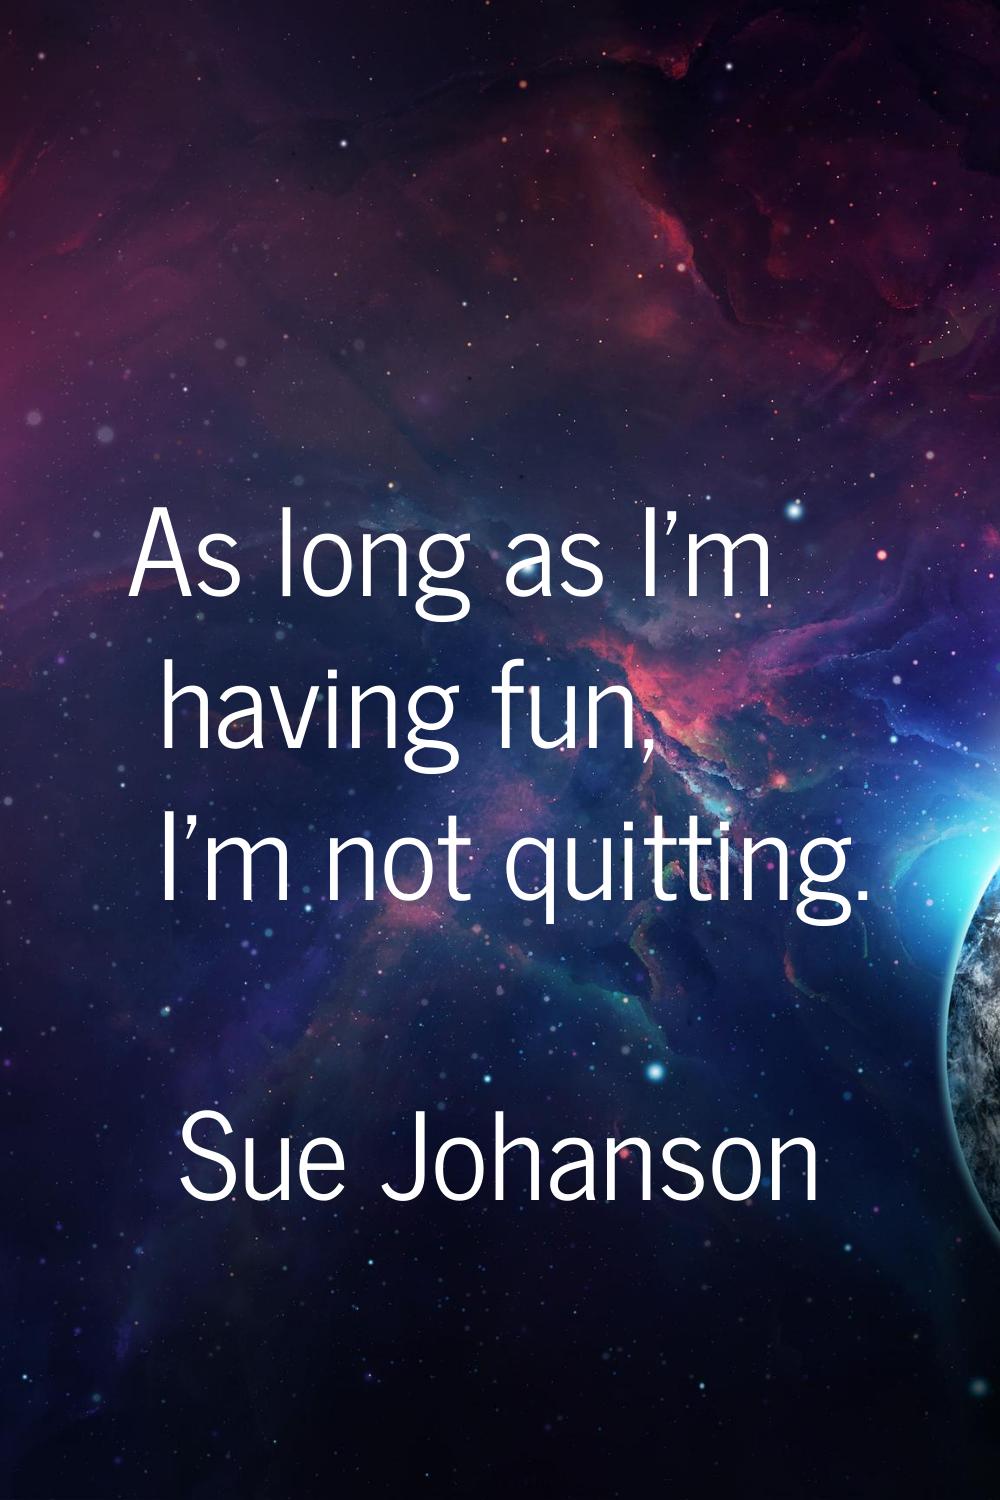 As long as I'm having fun, I'm not quitting.